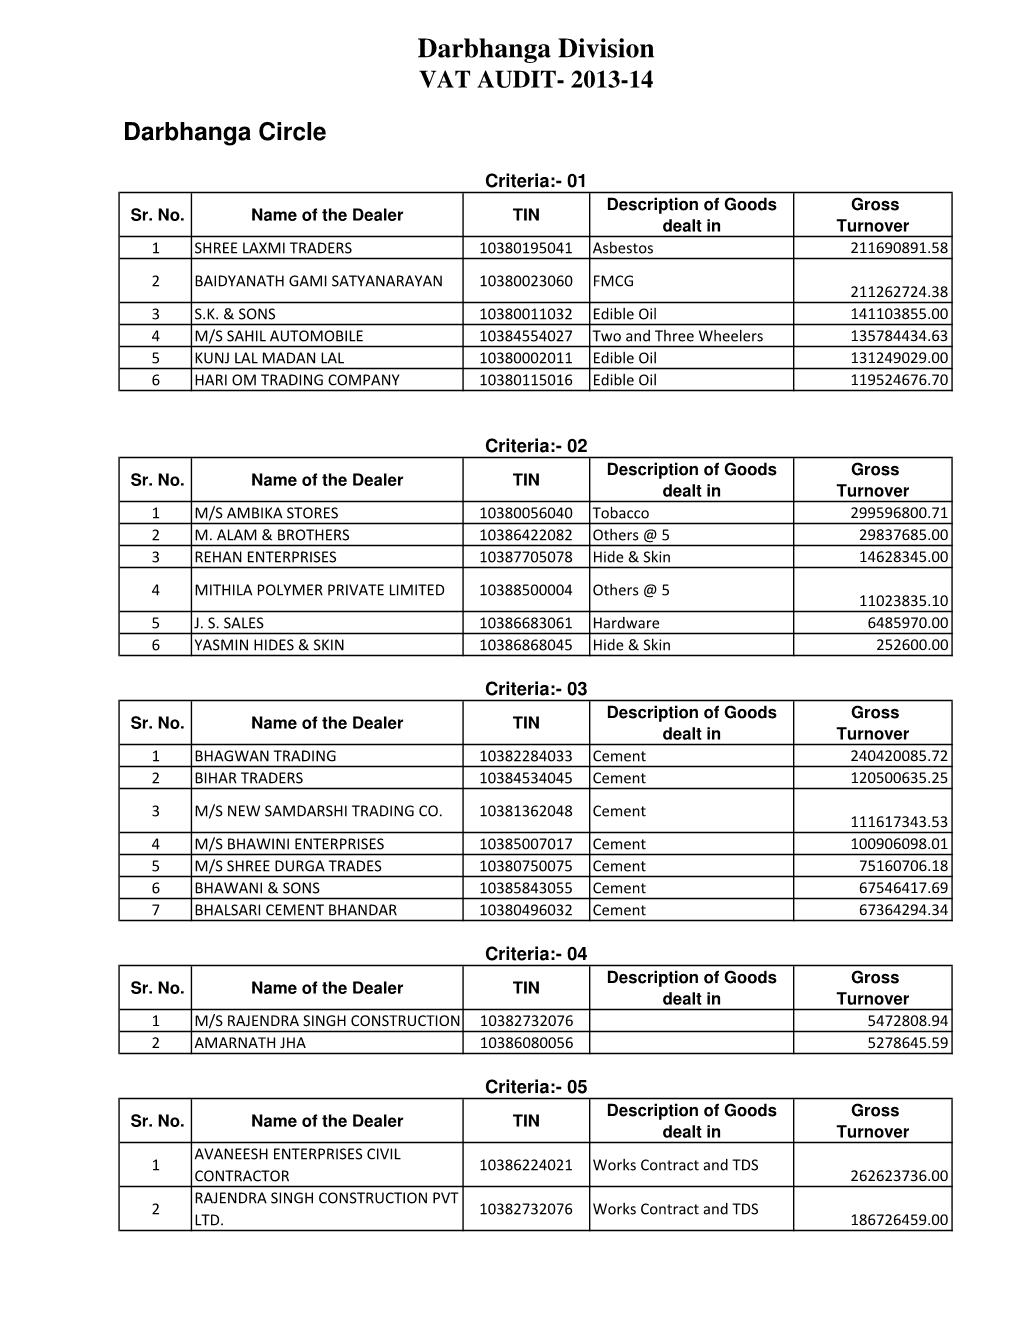 VAT Audit 2013-14 (Darbhanga Division).Pdf